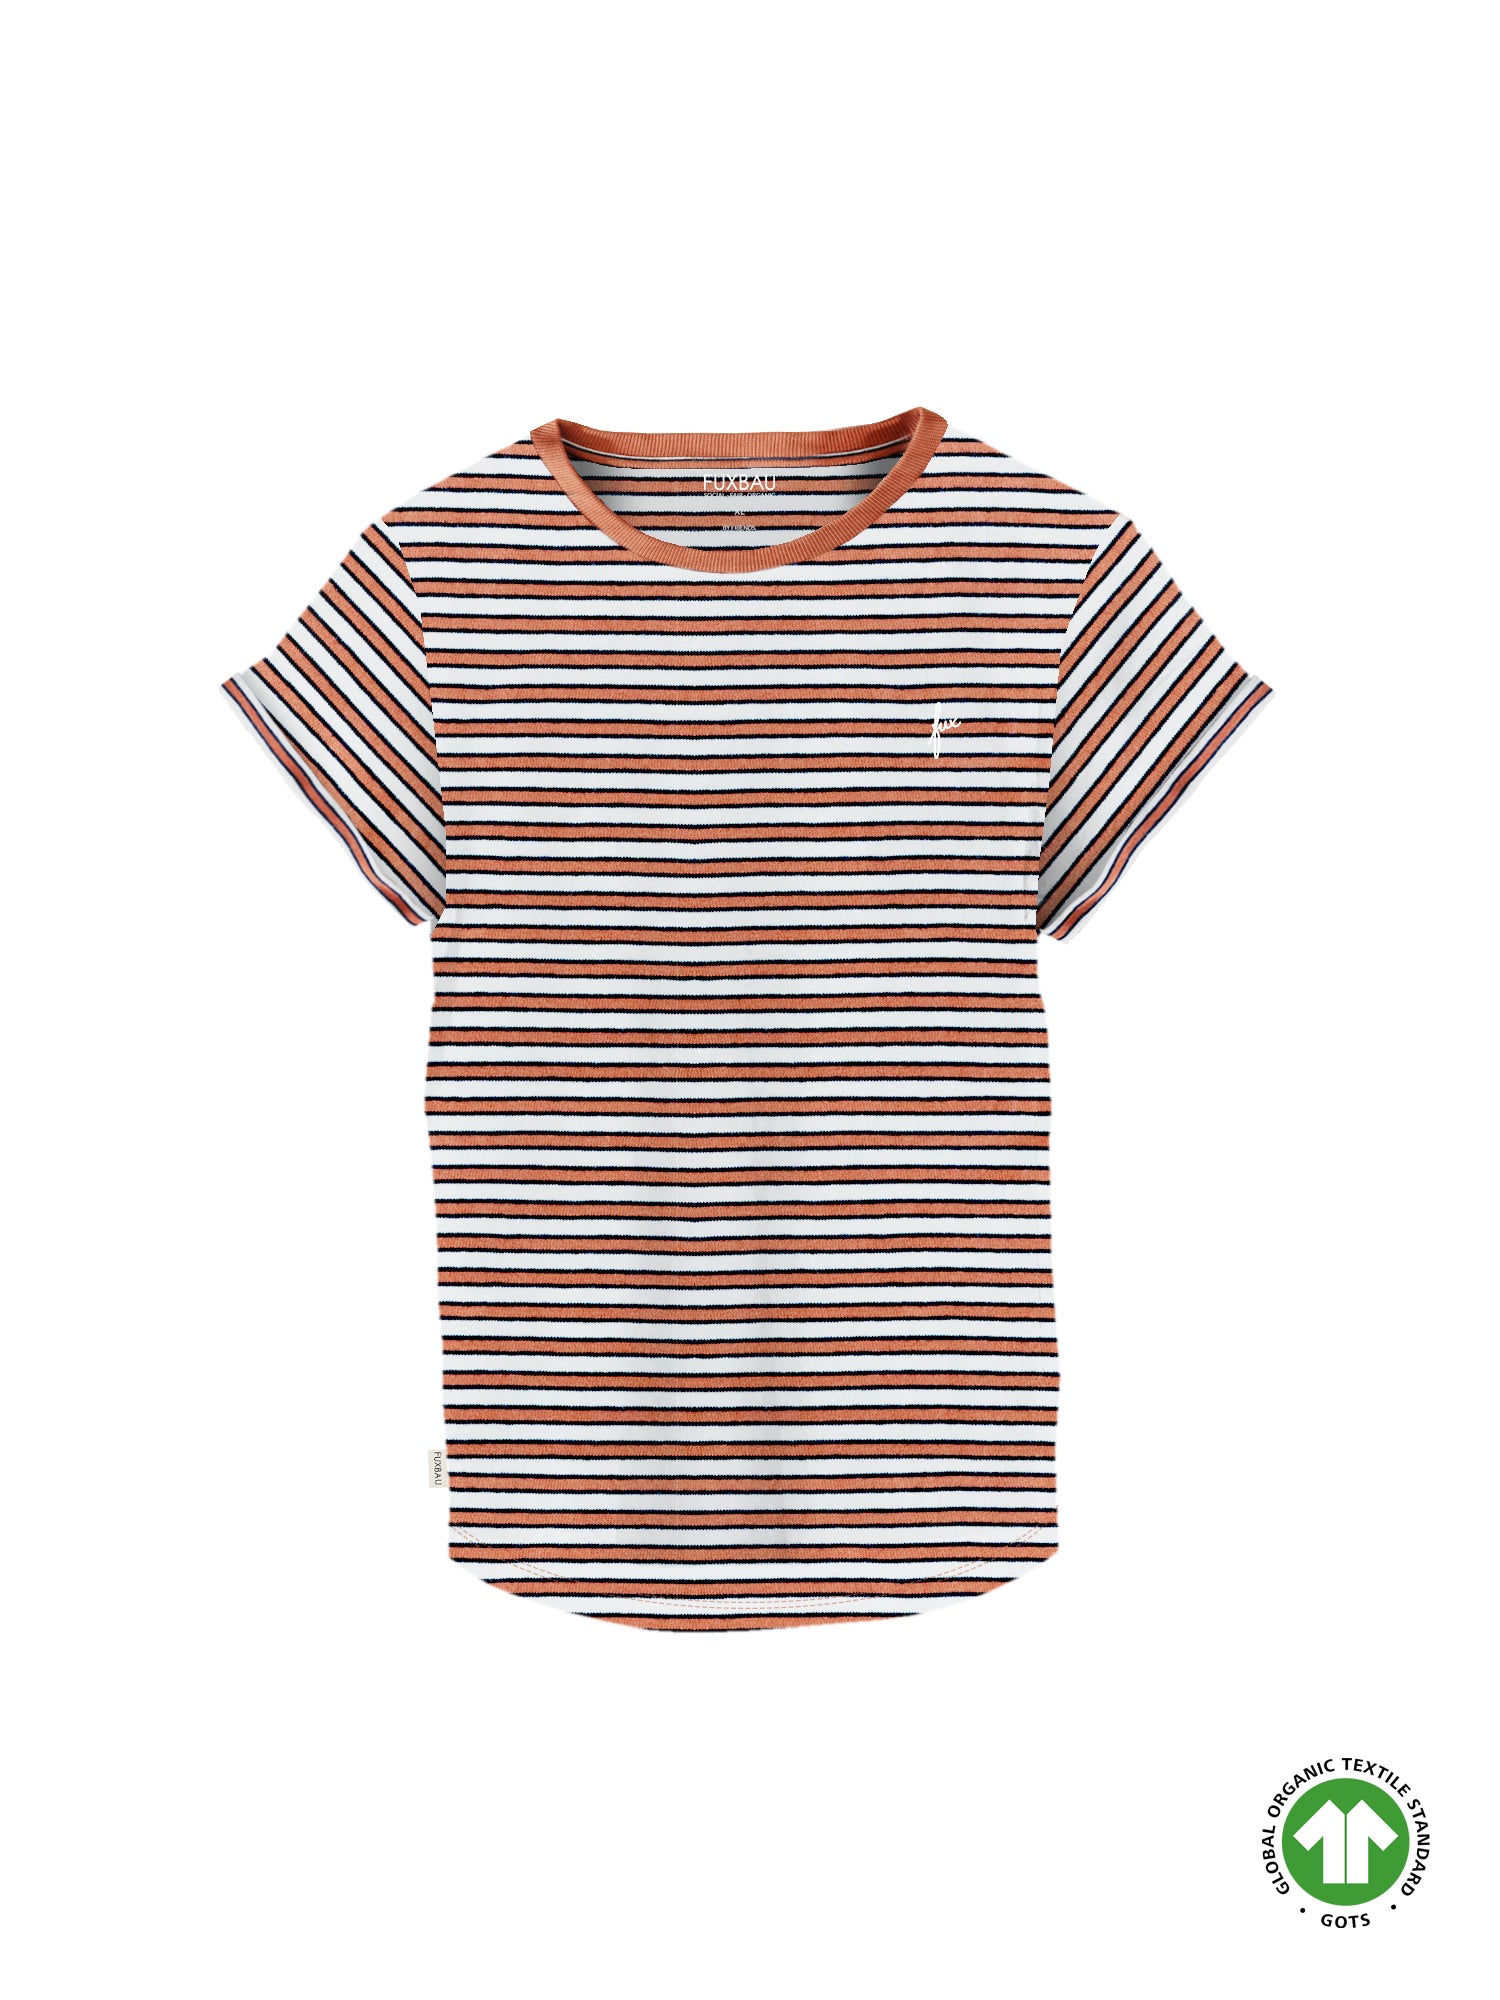 Nachhaltiges FUXBAU Fair Fashion Streifenshirt in  coral orange, weiss, navy gestreift aus 100% GOTS zertifizierter Biobaumwolle.